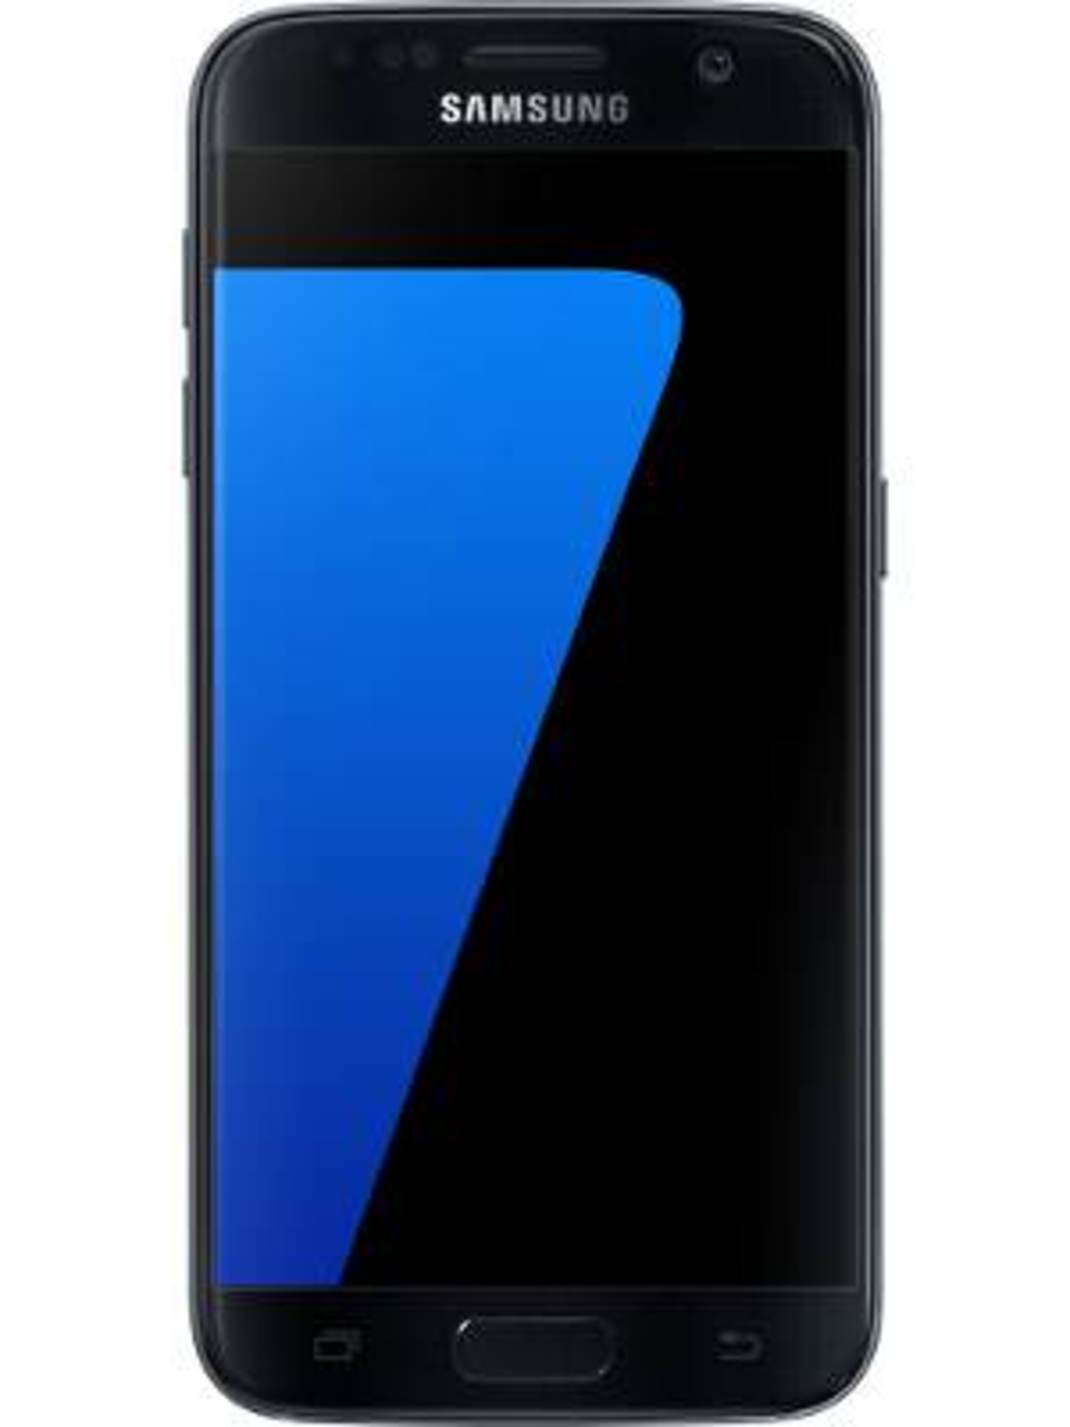 Helderheid Wat mensen betreft ik ben ziek Samsung Galaxy S7 vs Samsung Galaxy S7 Edge: Compare Specifications, Price  | Gadgets Now